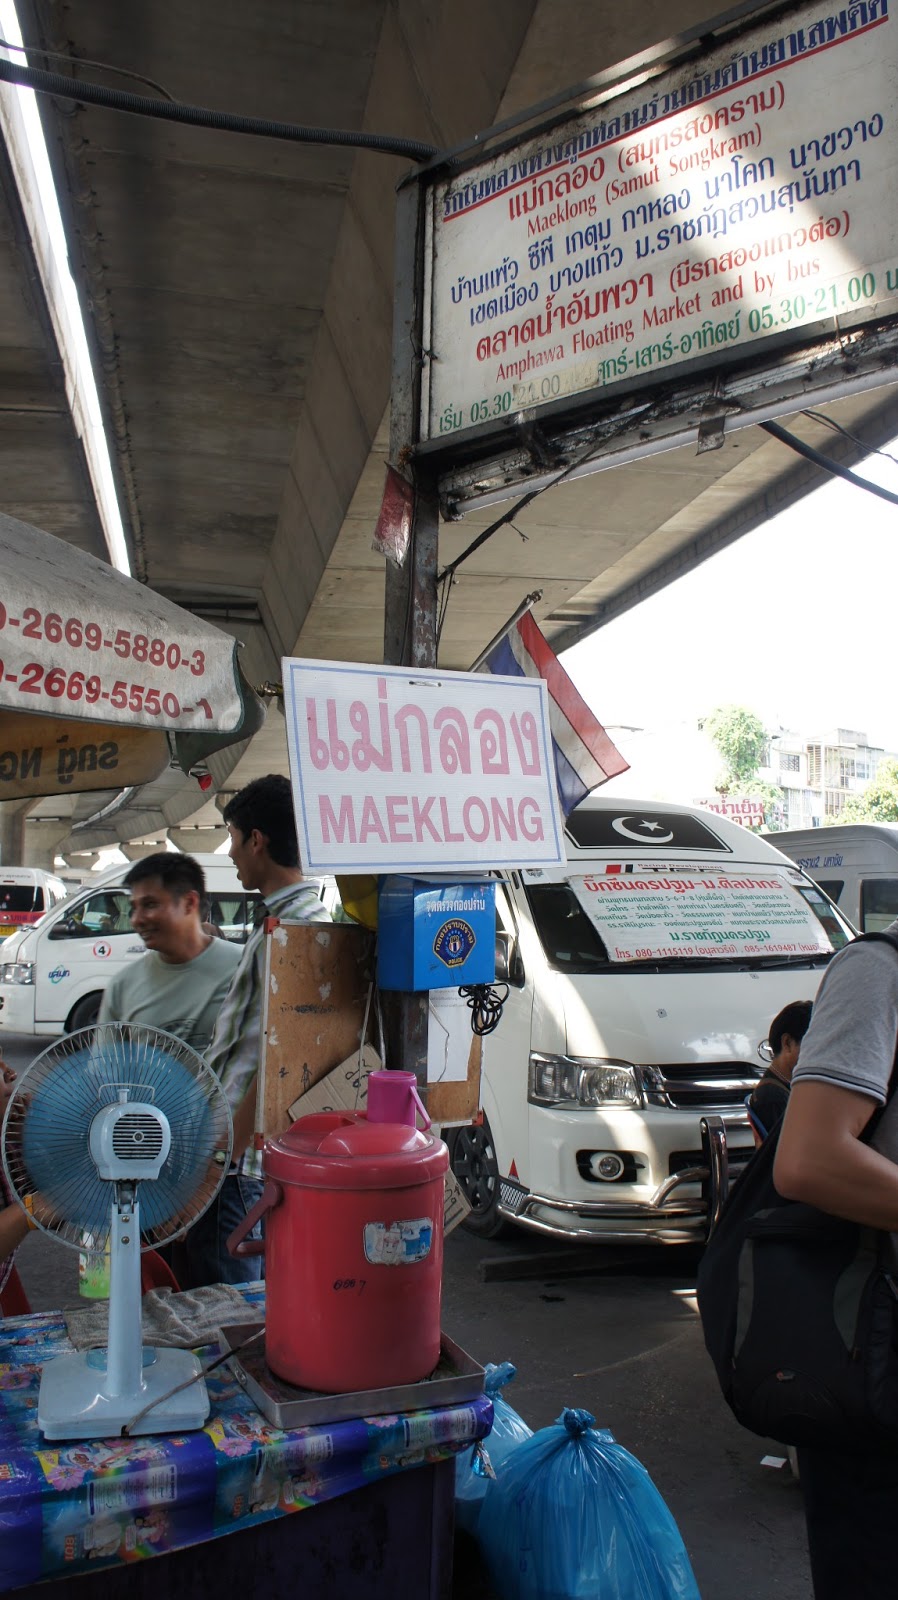 曼谷旅遊 往郊區 美功市場 水上市場